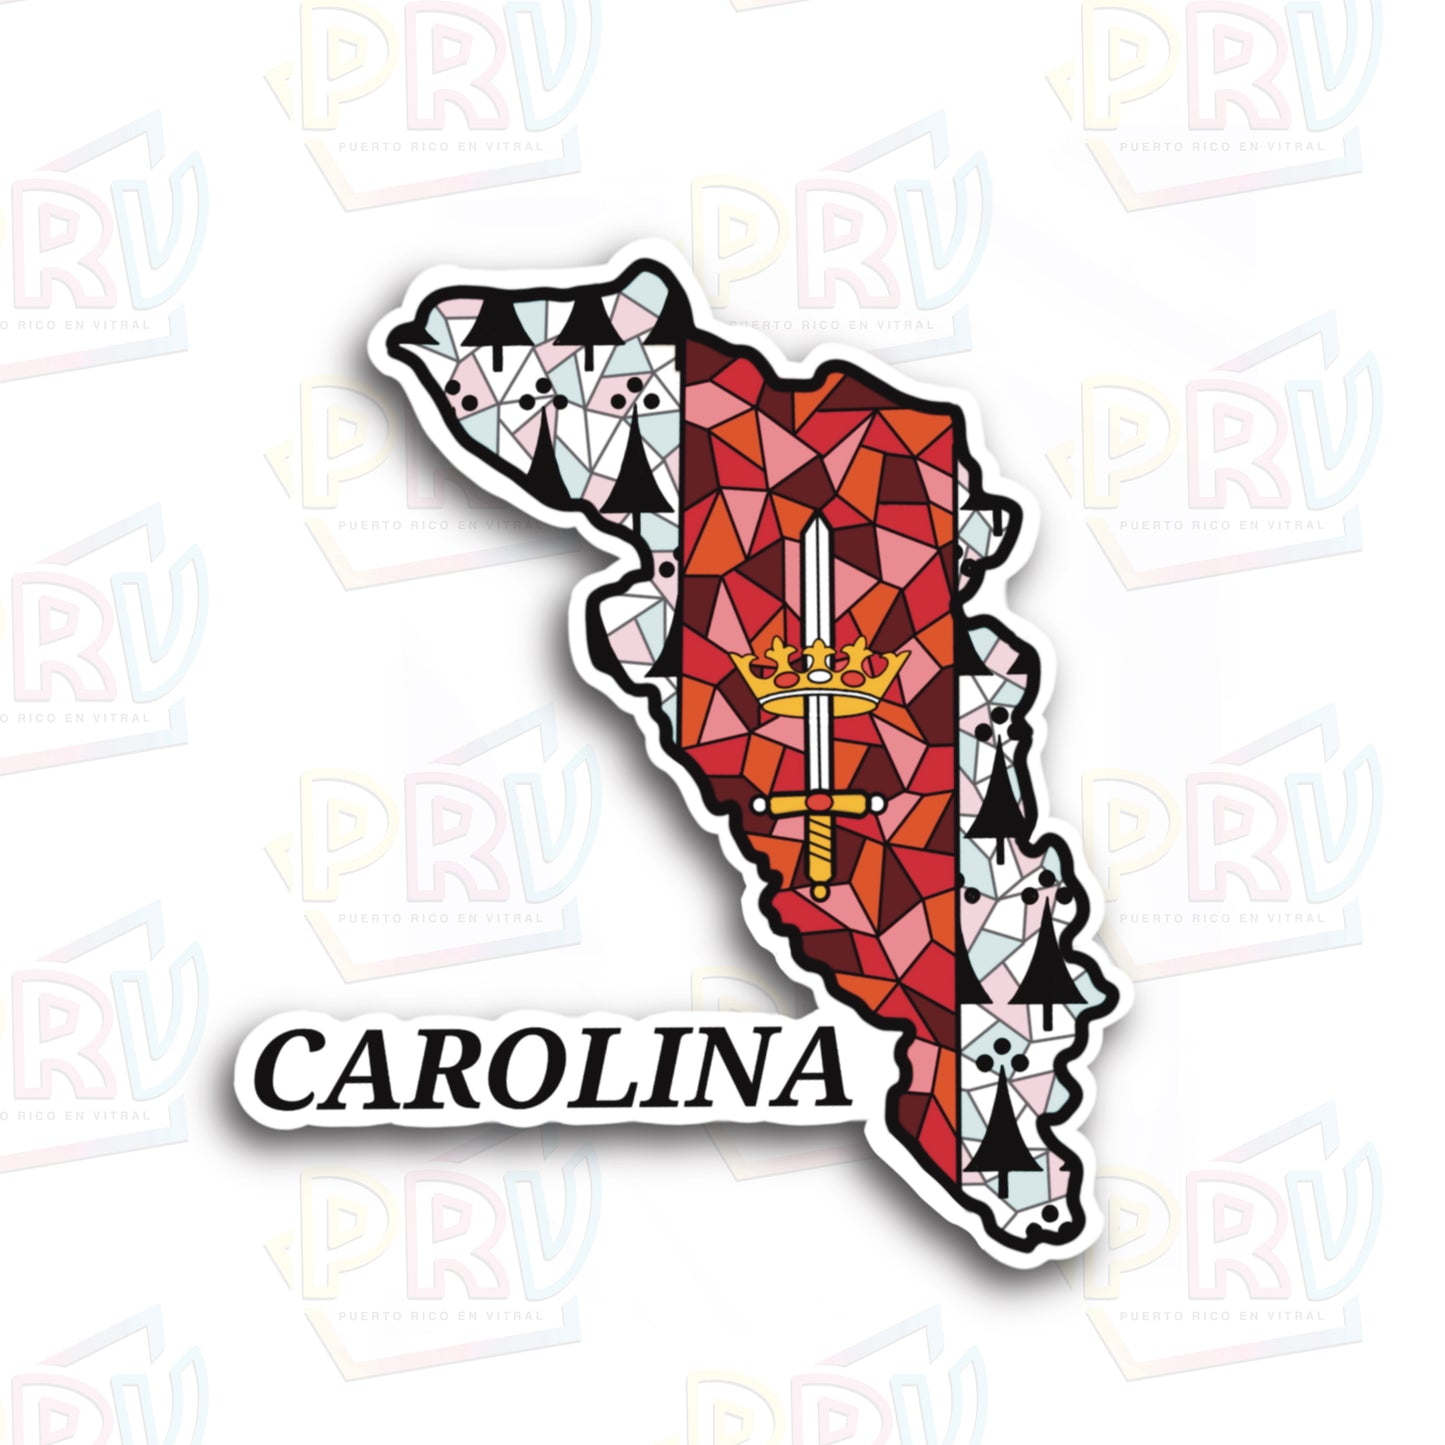 Carolina PR (Sticker)